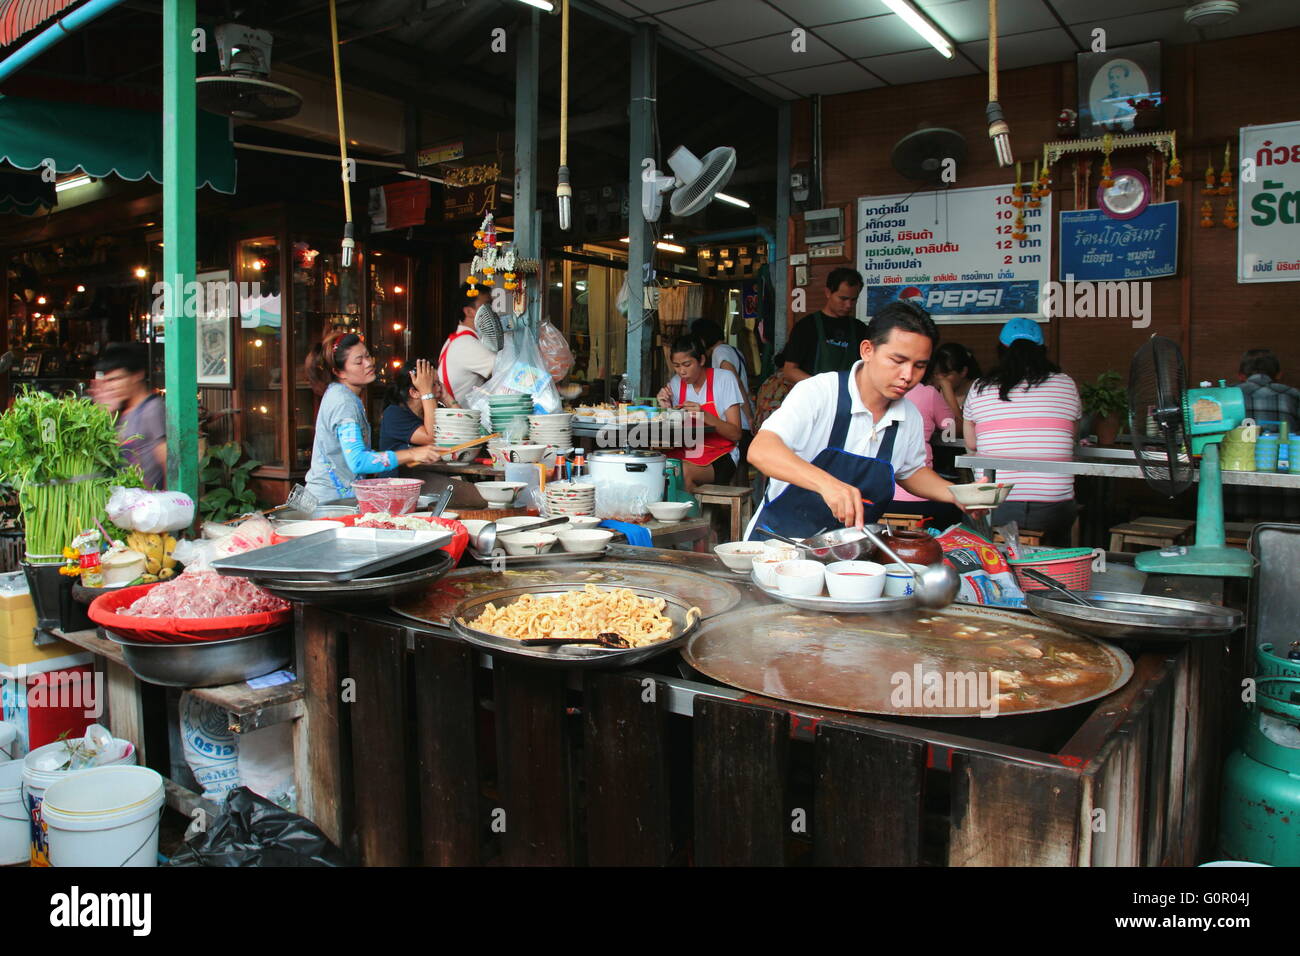 Food dans Chatuchak Weekend Market, Bangkok. Un homme occupé à préparer la nourriture pour les clients. Banque D'Images